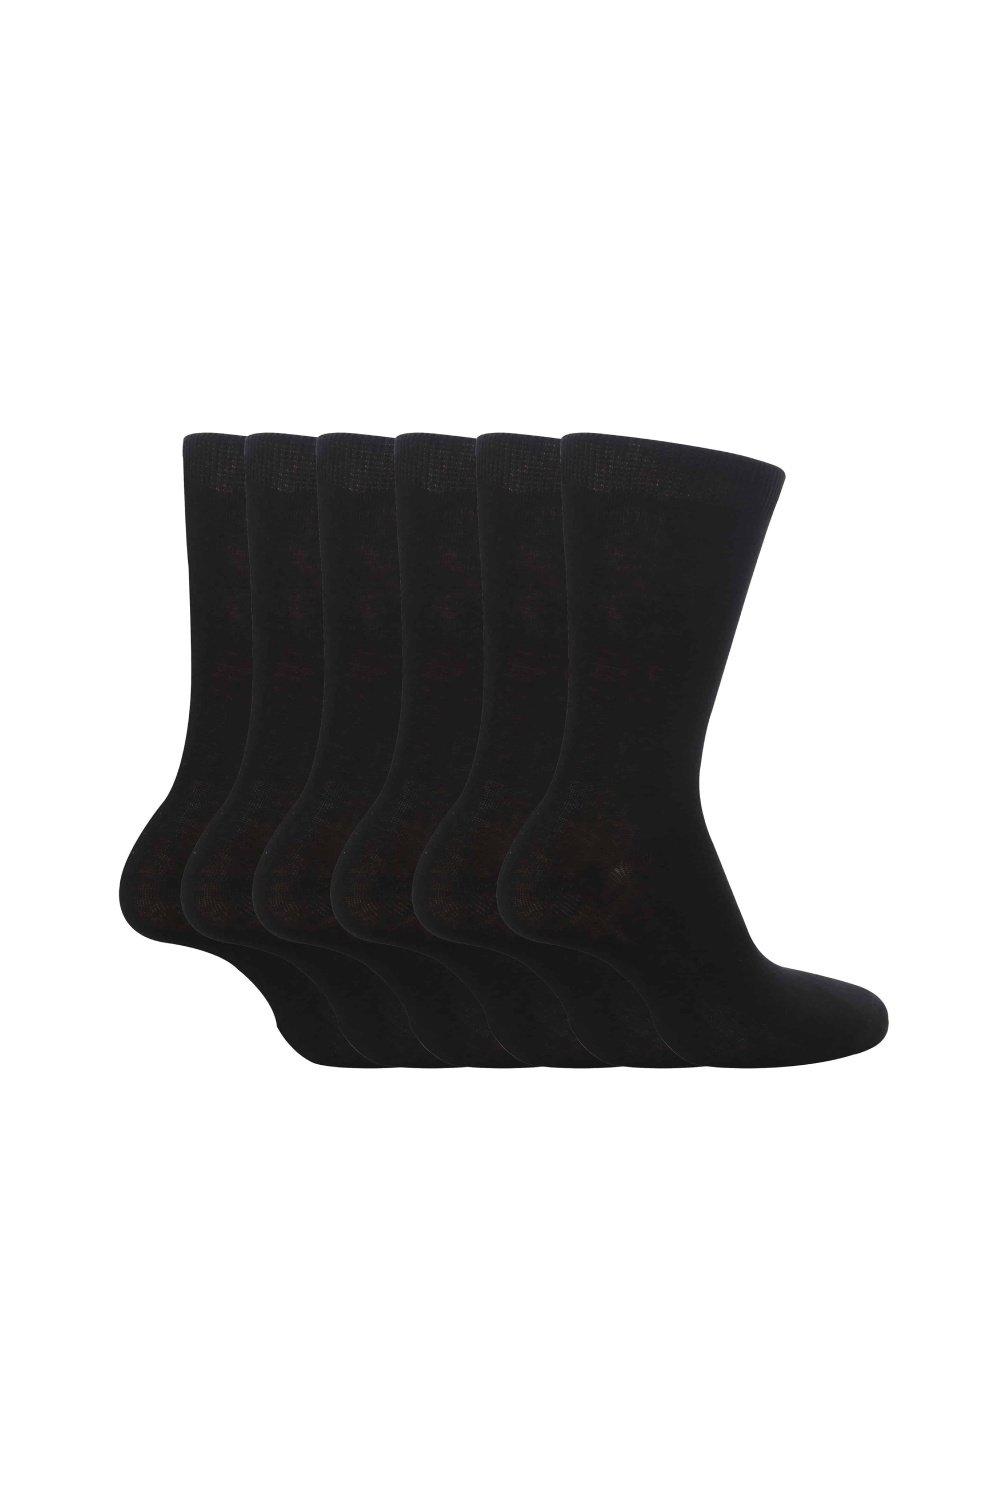 6 пар простых школьных мягких хлопковых носков Sock Snob, черный